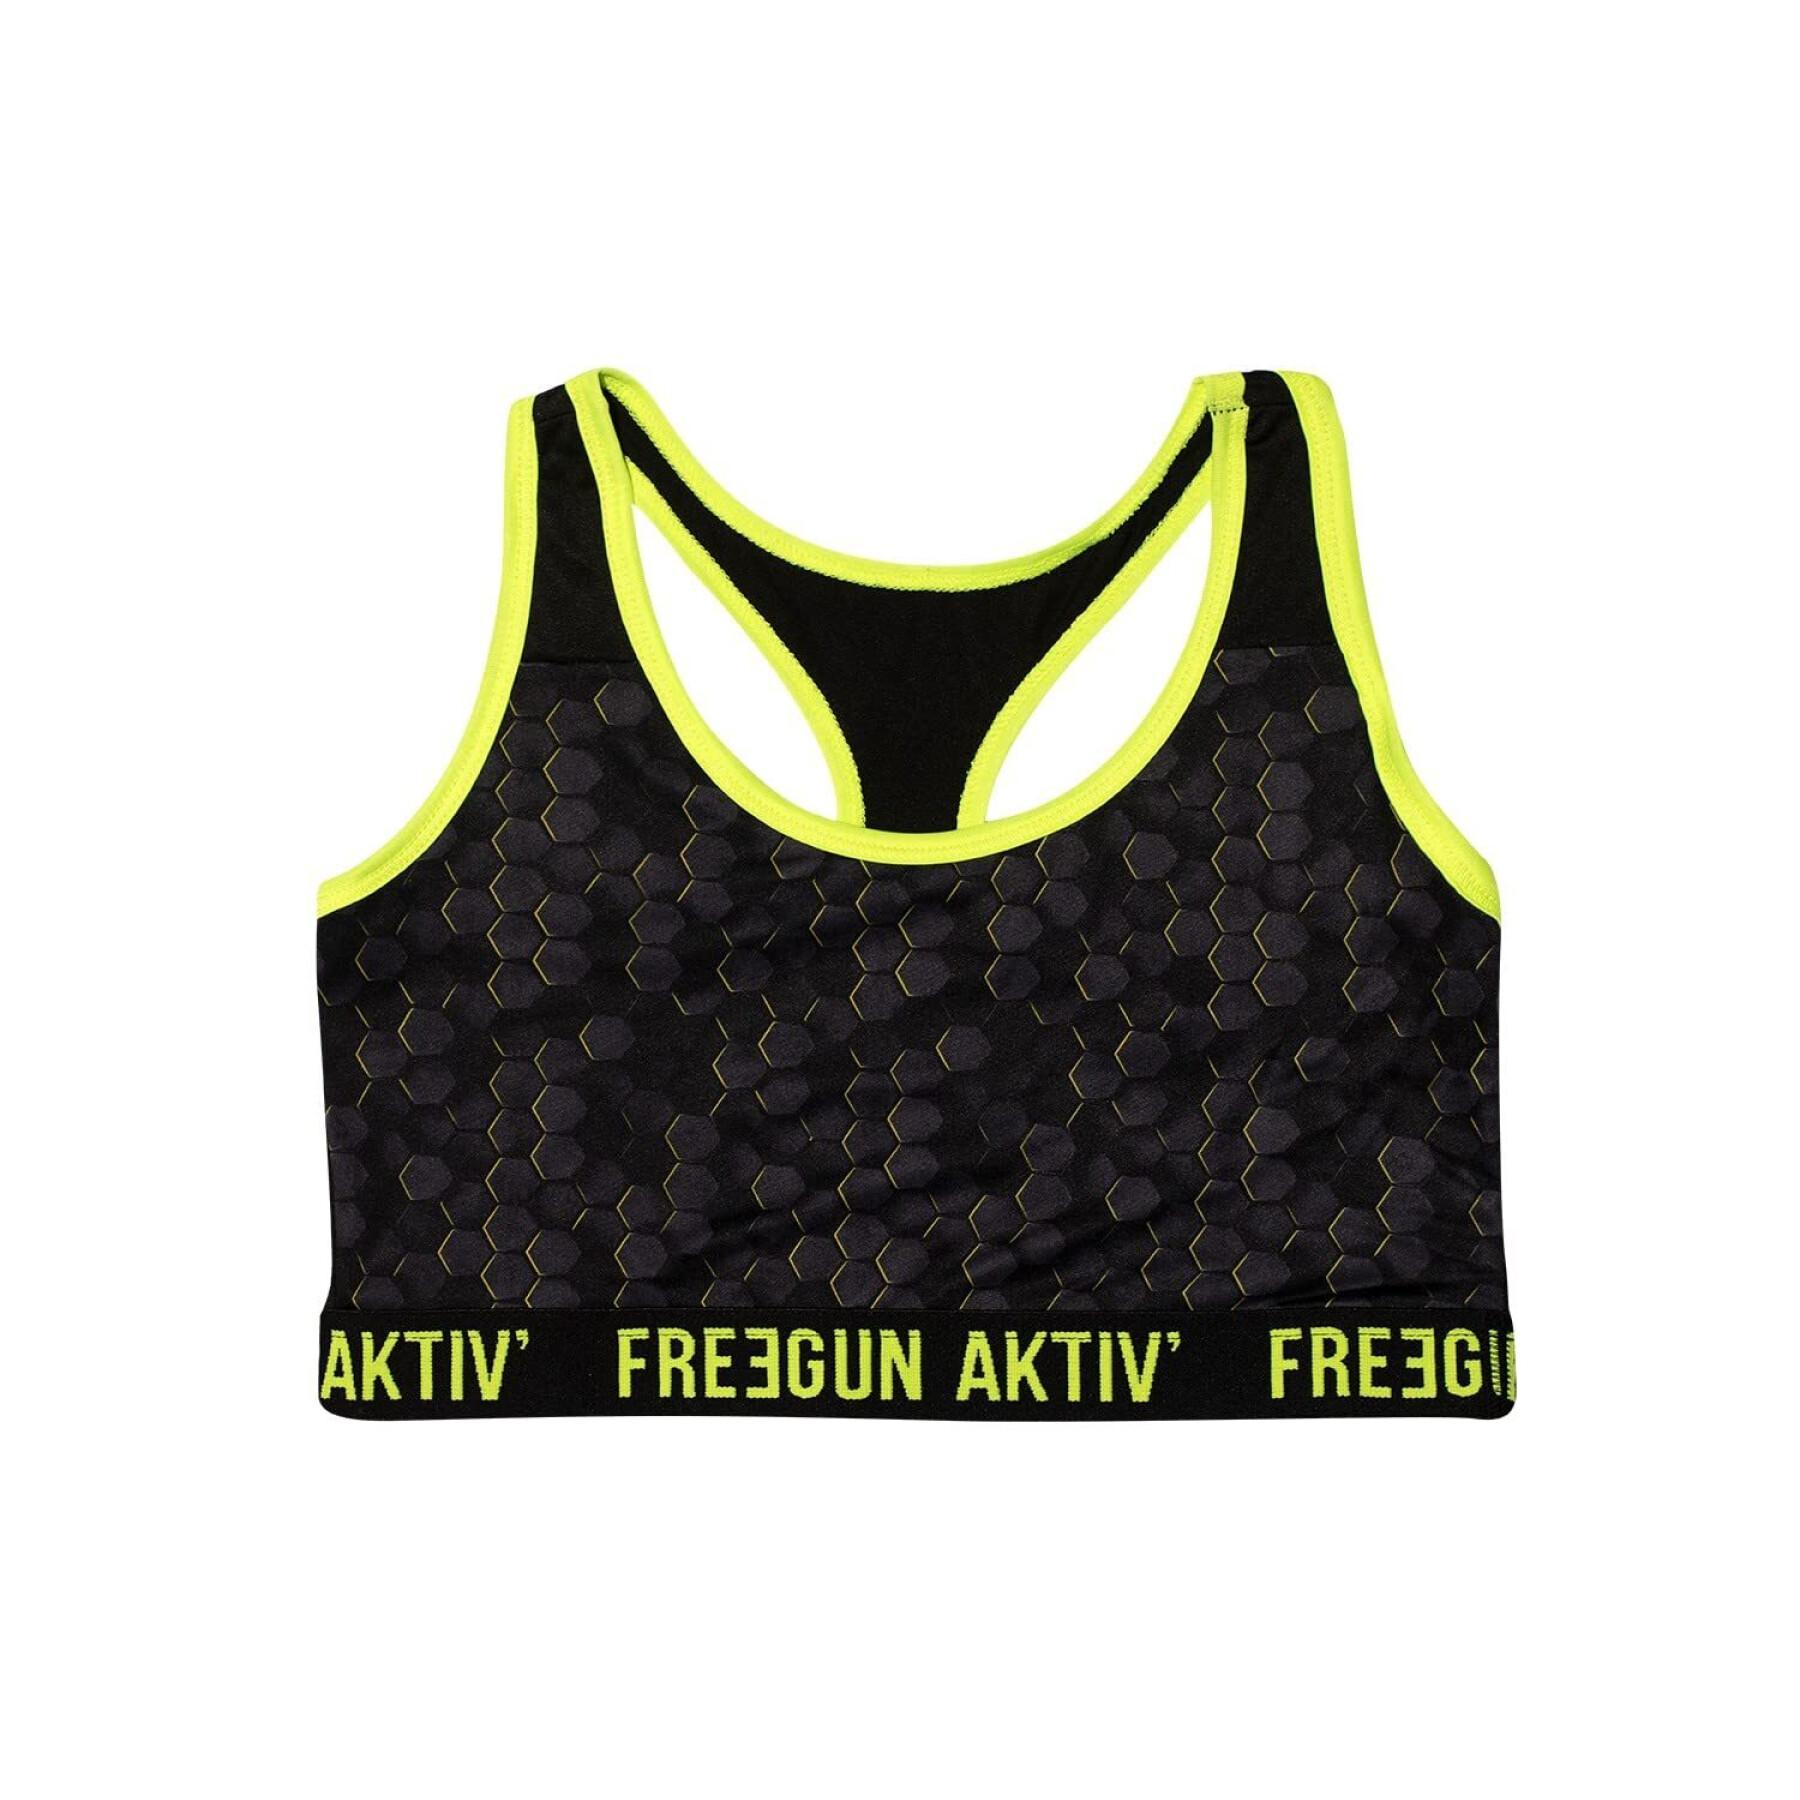 Women's bra Freegun Aktiv Hexa